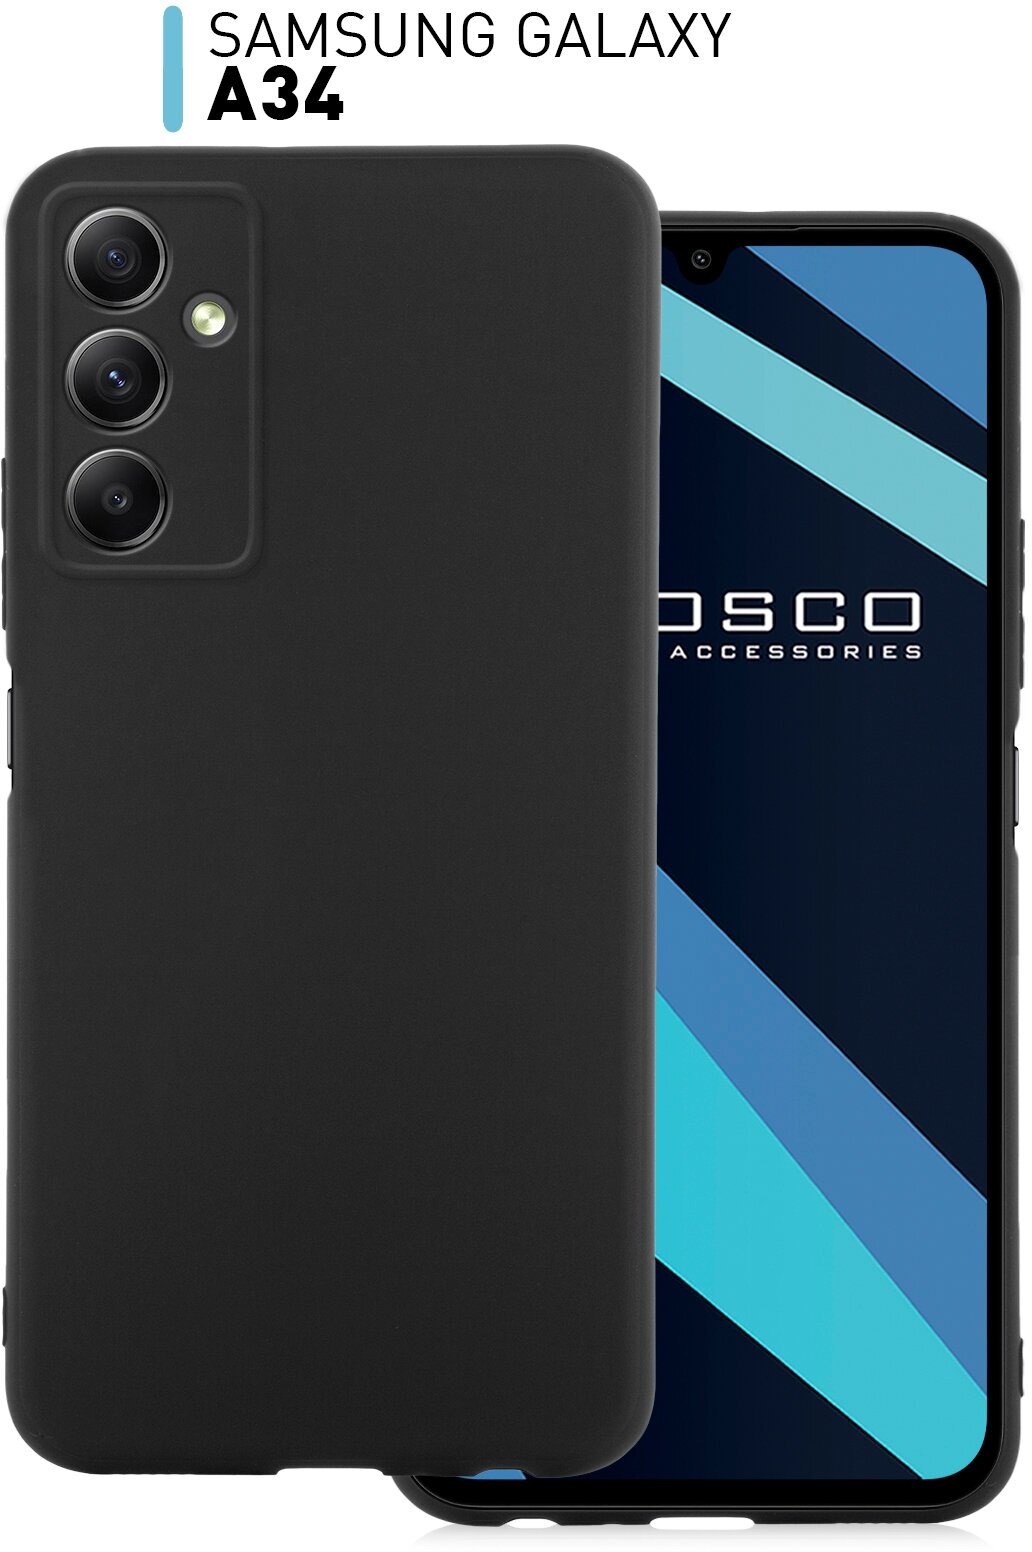 Чехол ROSCO для Samsung Galaxy A34 (Самсунг Галакси А34), тонкий, силиконовый чехол, матовое SOFT-TOUCH покрытие, бортик (защита) модуля камер, черный